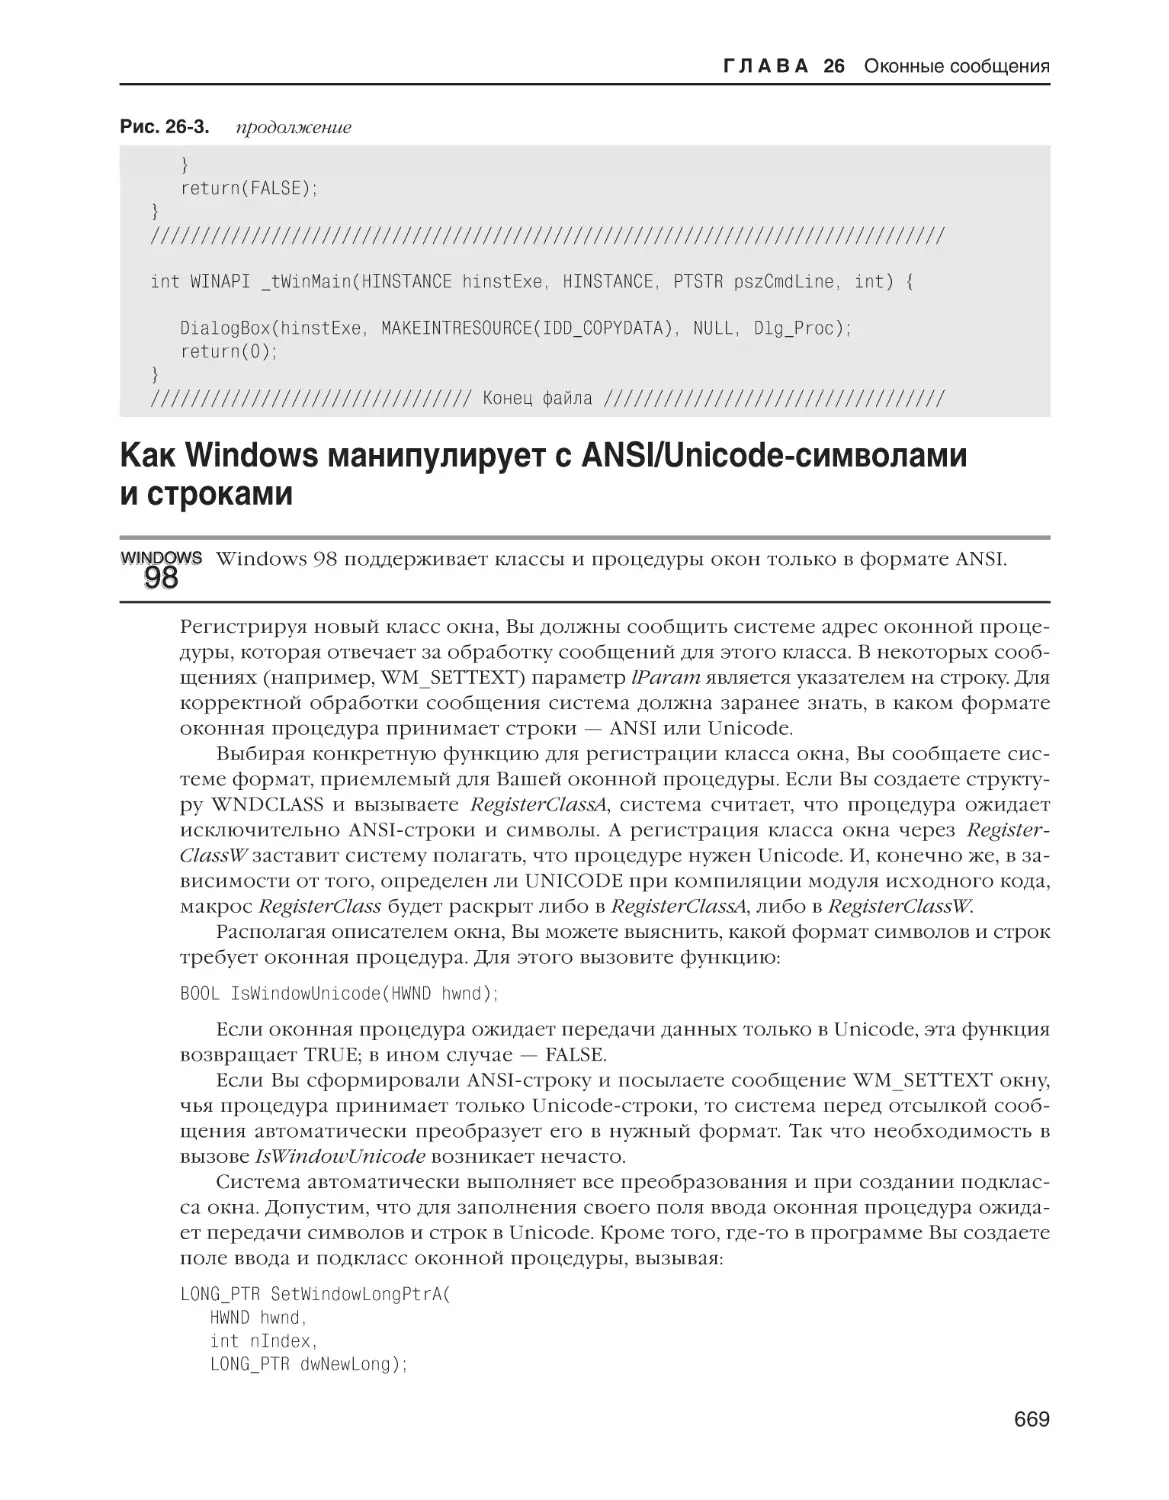 Как Windows манипулирует с ANSI/Unicode-символами и строками